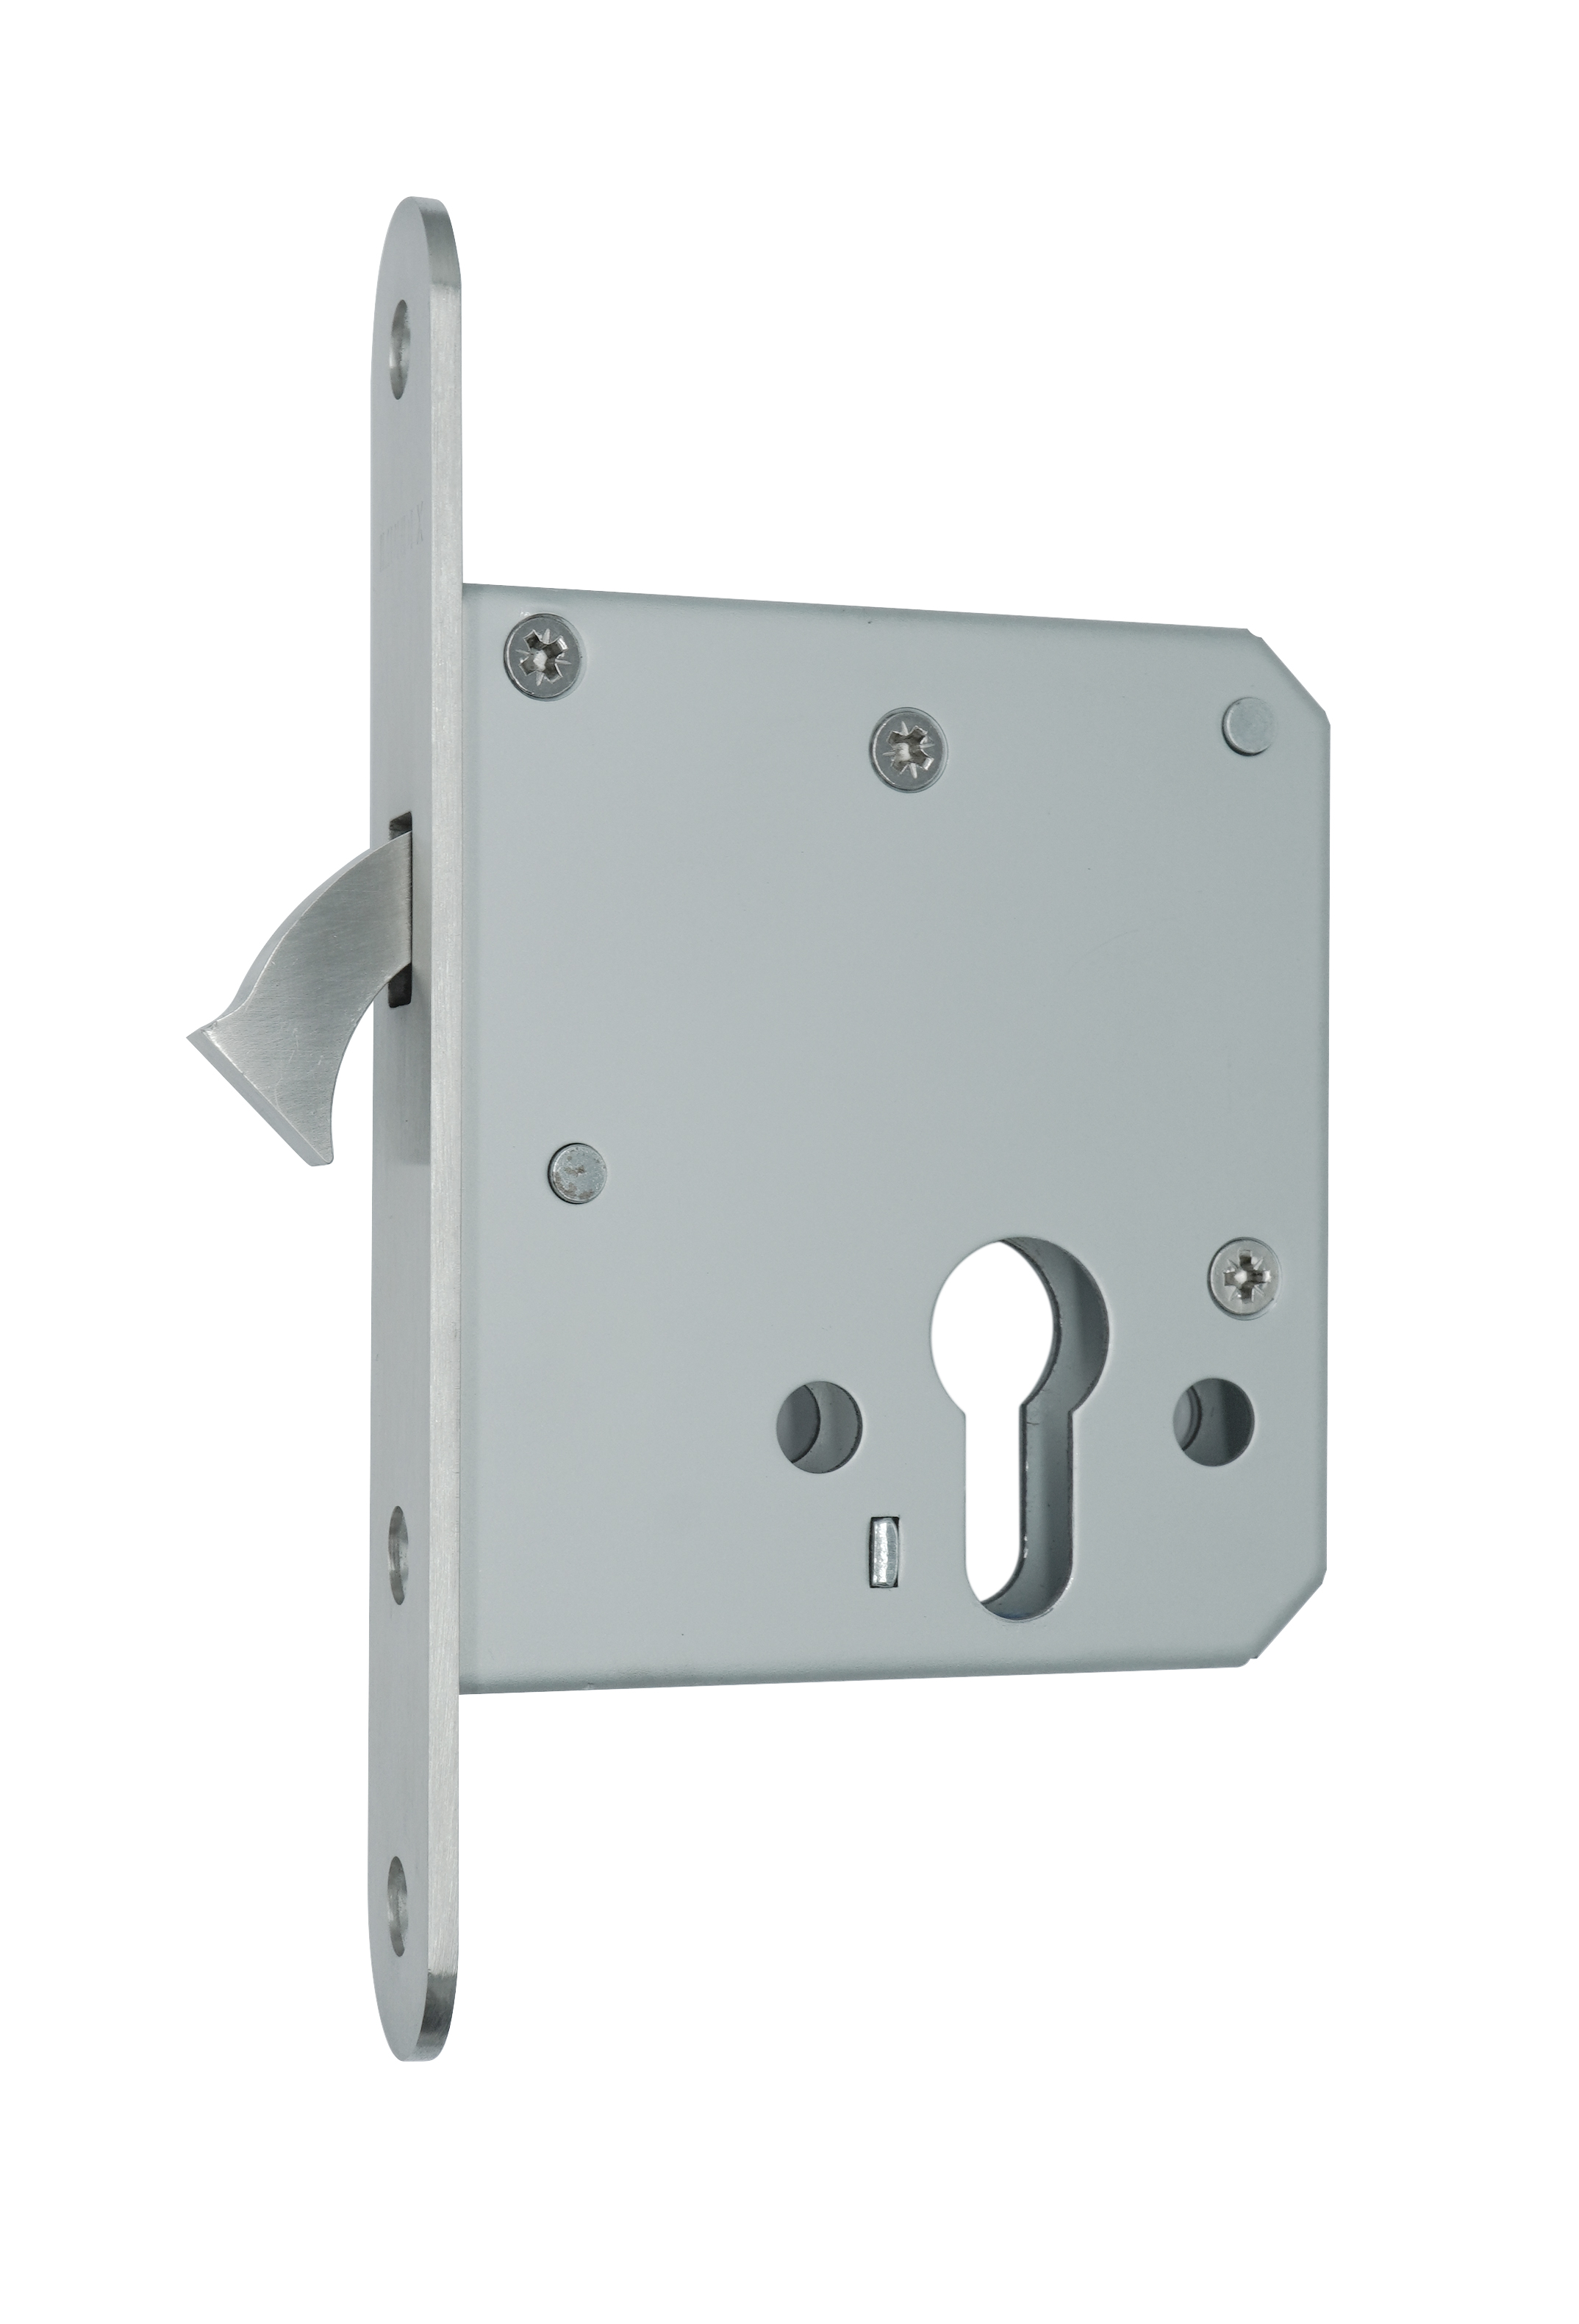 Mortise lock for sliding door